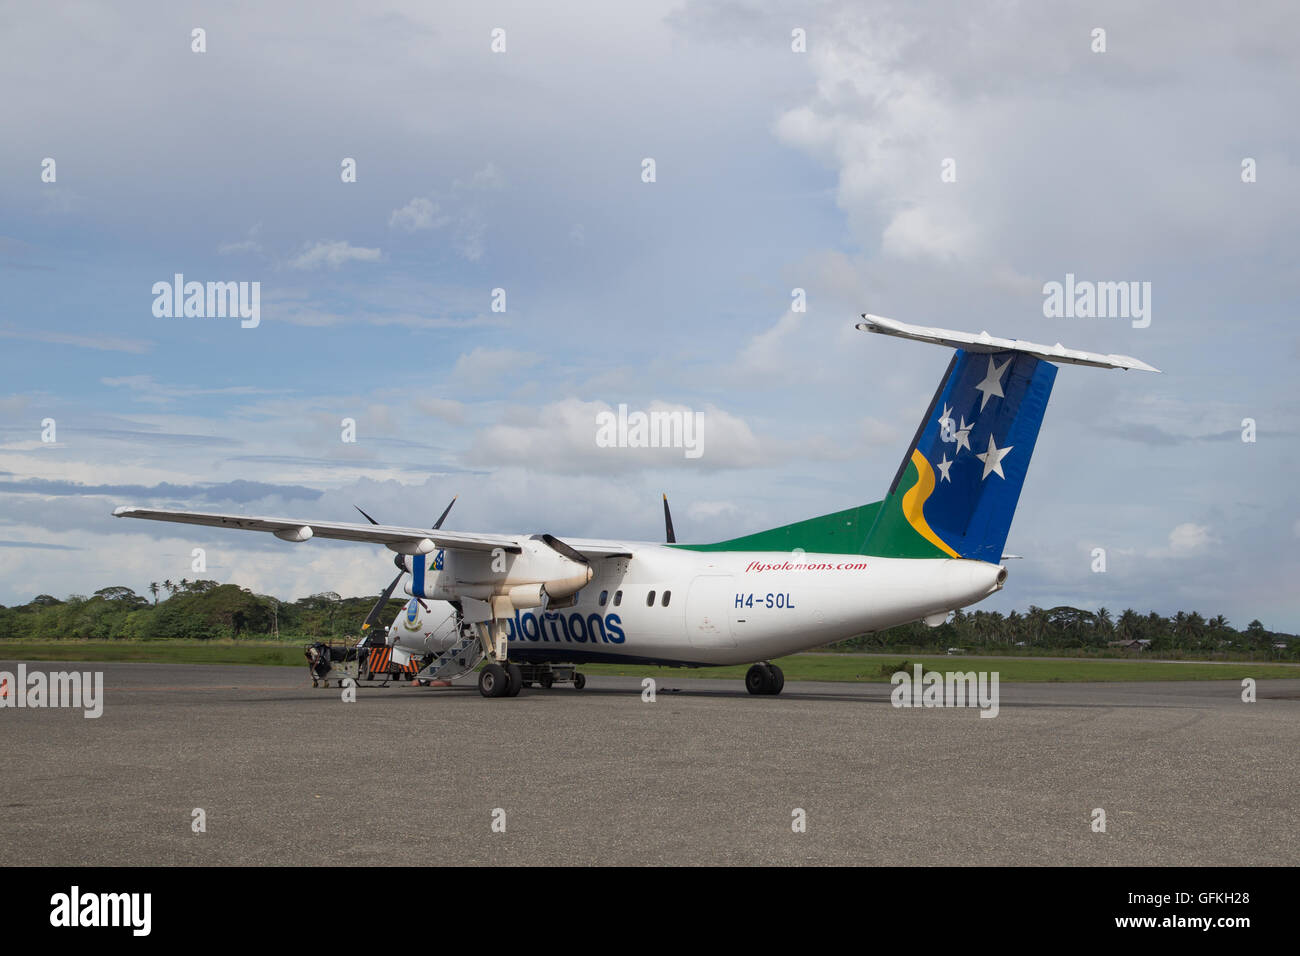 Honiara, Salomonen - 27. Mai 2015: kleine Propeller-Flugzeug am Flughafen geparkt Stockfoto